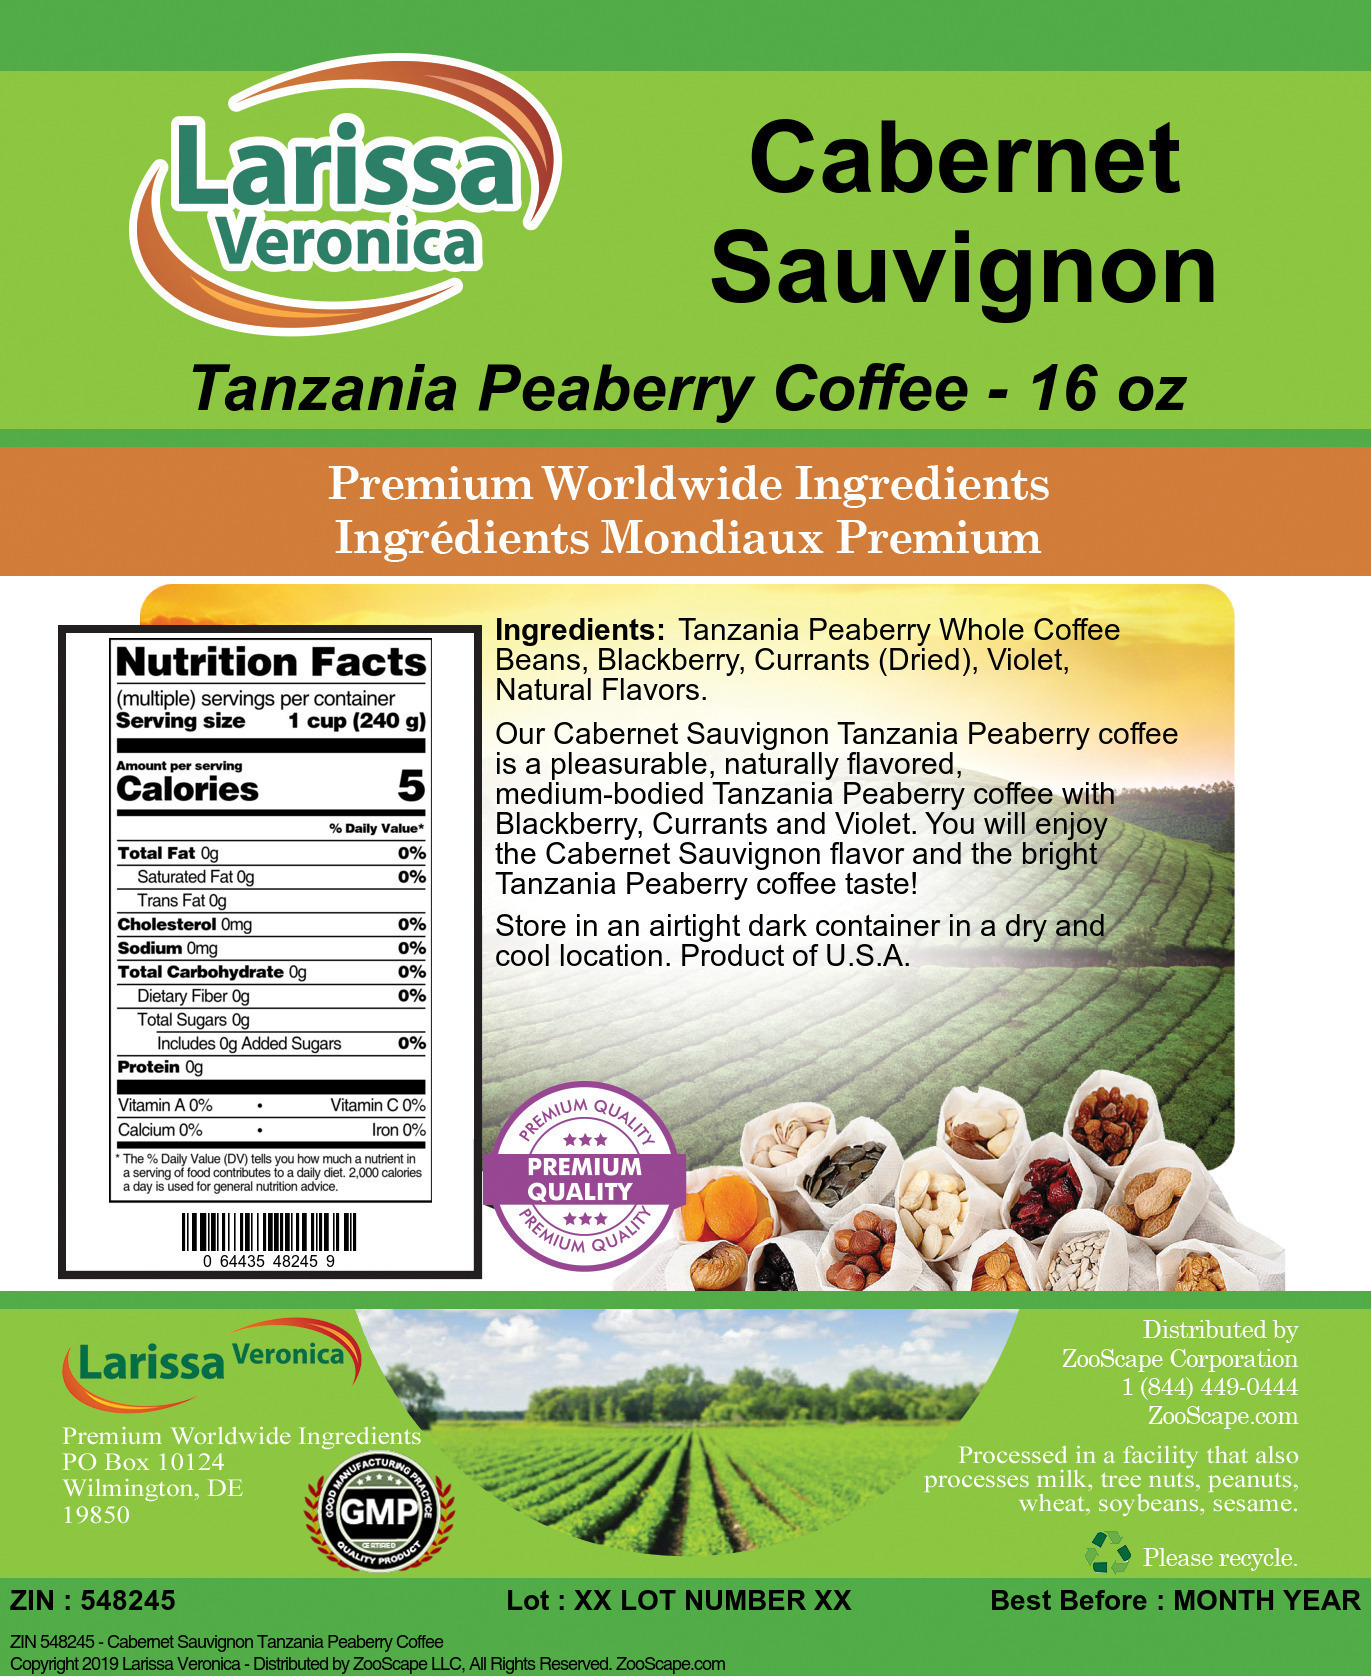 Cabernet Sauvignon Tanzania Peaberry Coffee - Label